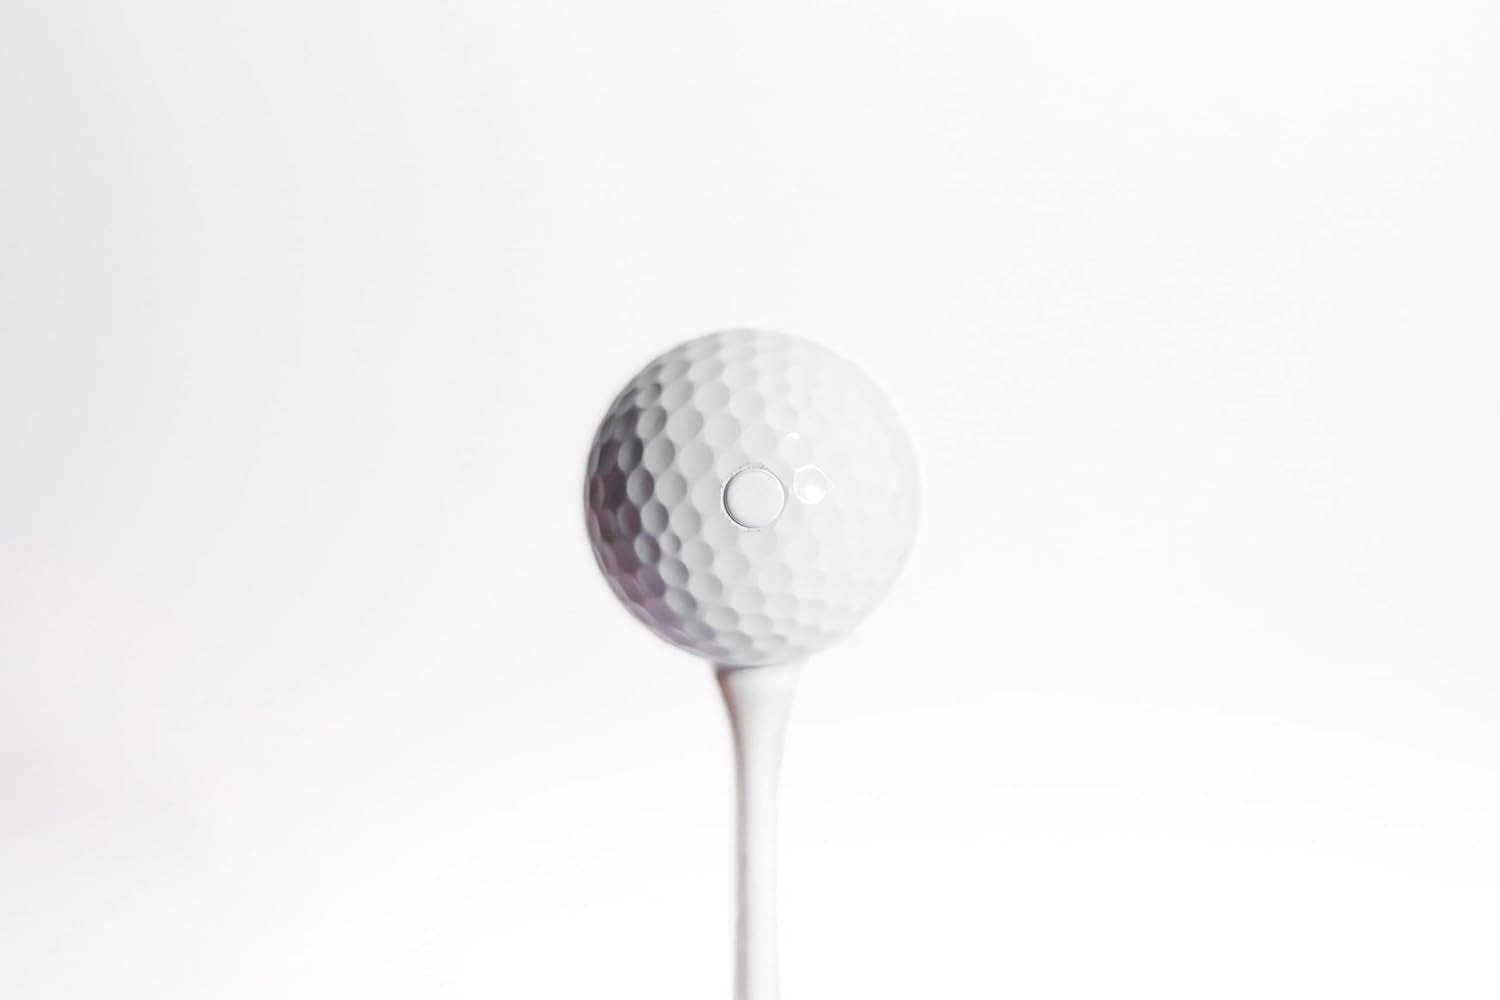 Shock'D Golf Balls - the World'S Loudest Golf Ball - Viral Prank Ball (Sleeve of 3, Novelty)